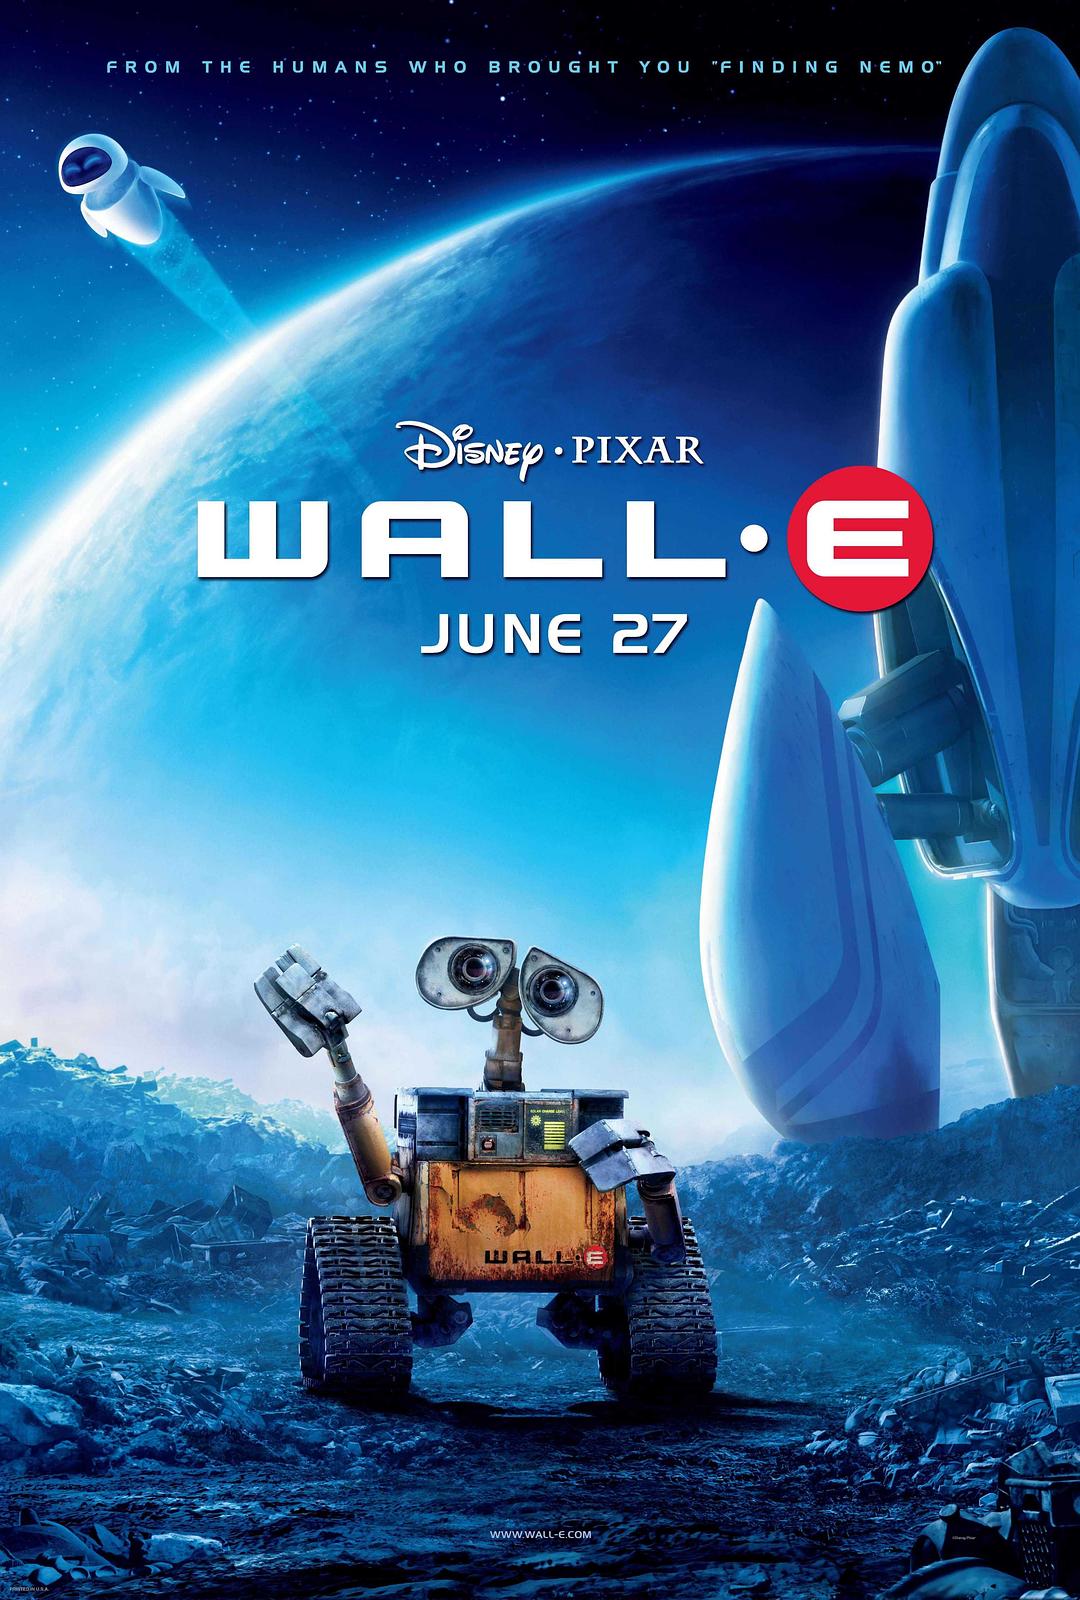 机械人总带动 WALL-E.2008.2160p.BluRay.x264.8bit.SDR.DTS-HD.MA.TrueHD.7.1.Atmos-SWTYBLZ 22.35GB-1.png